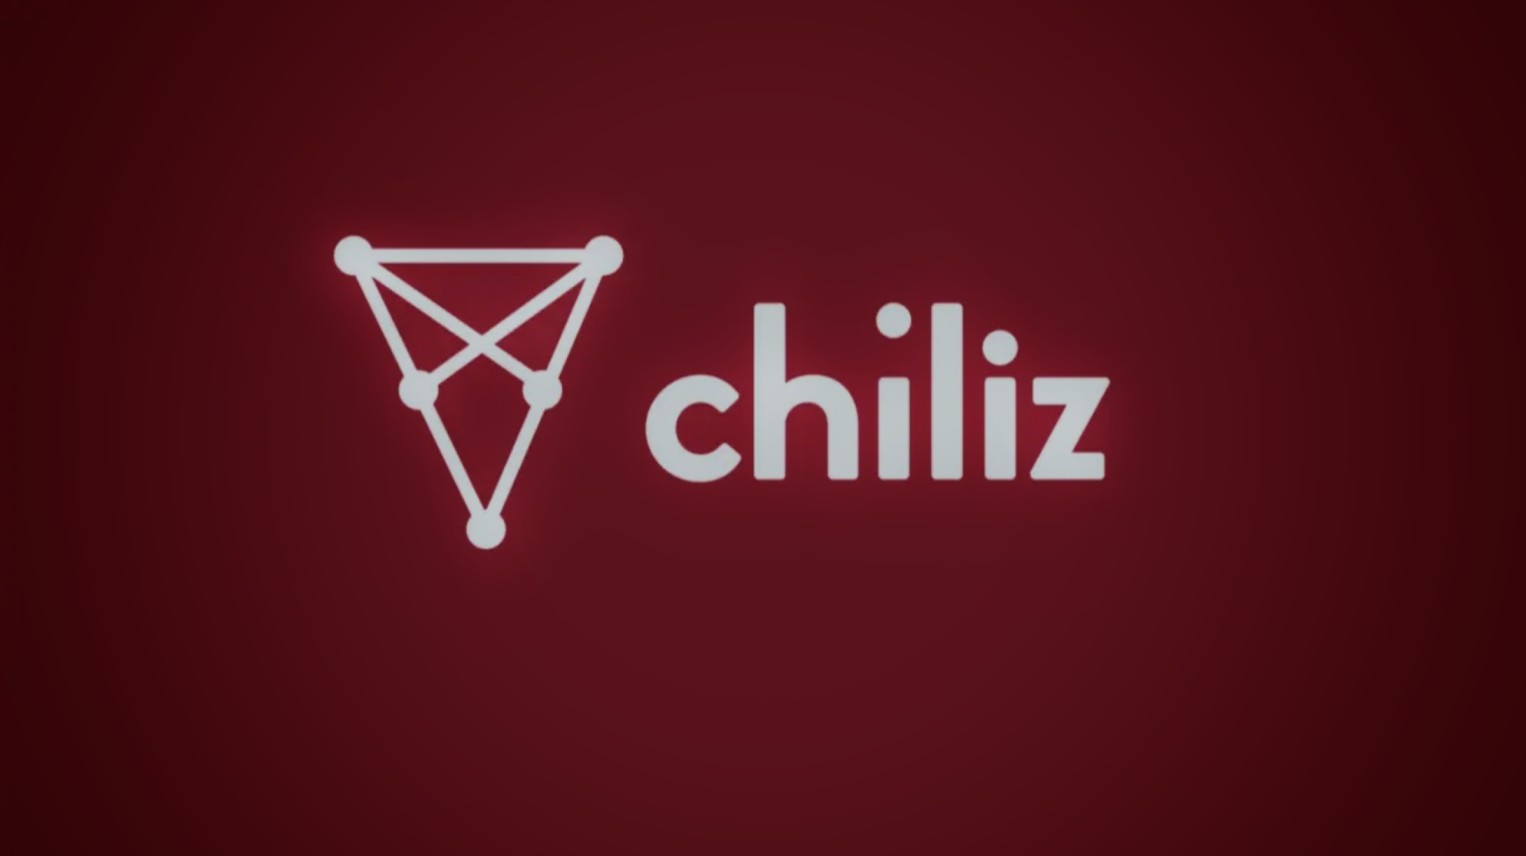 Chiliz crypto: will chiliz price increase?